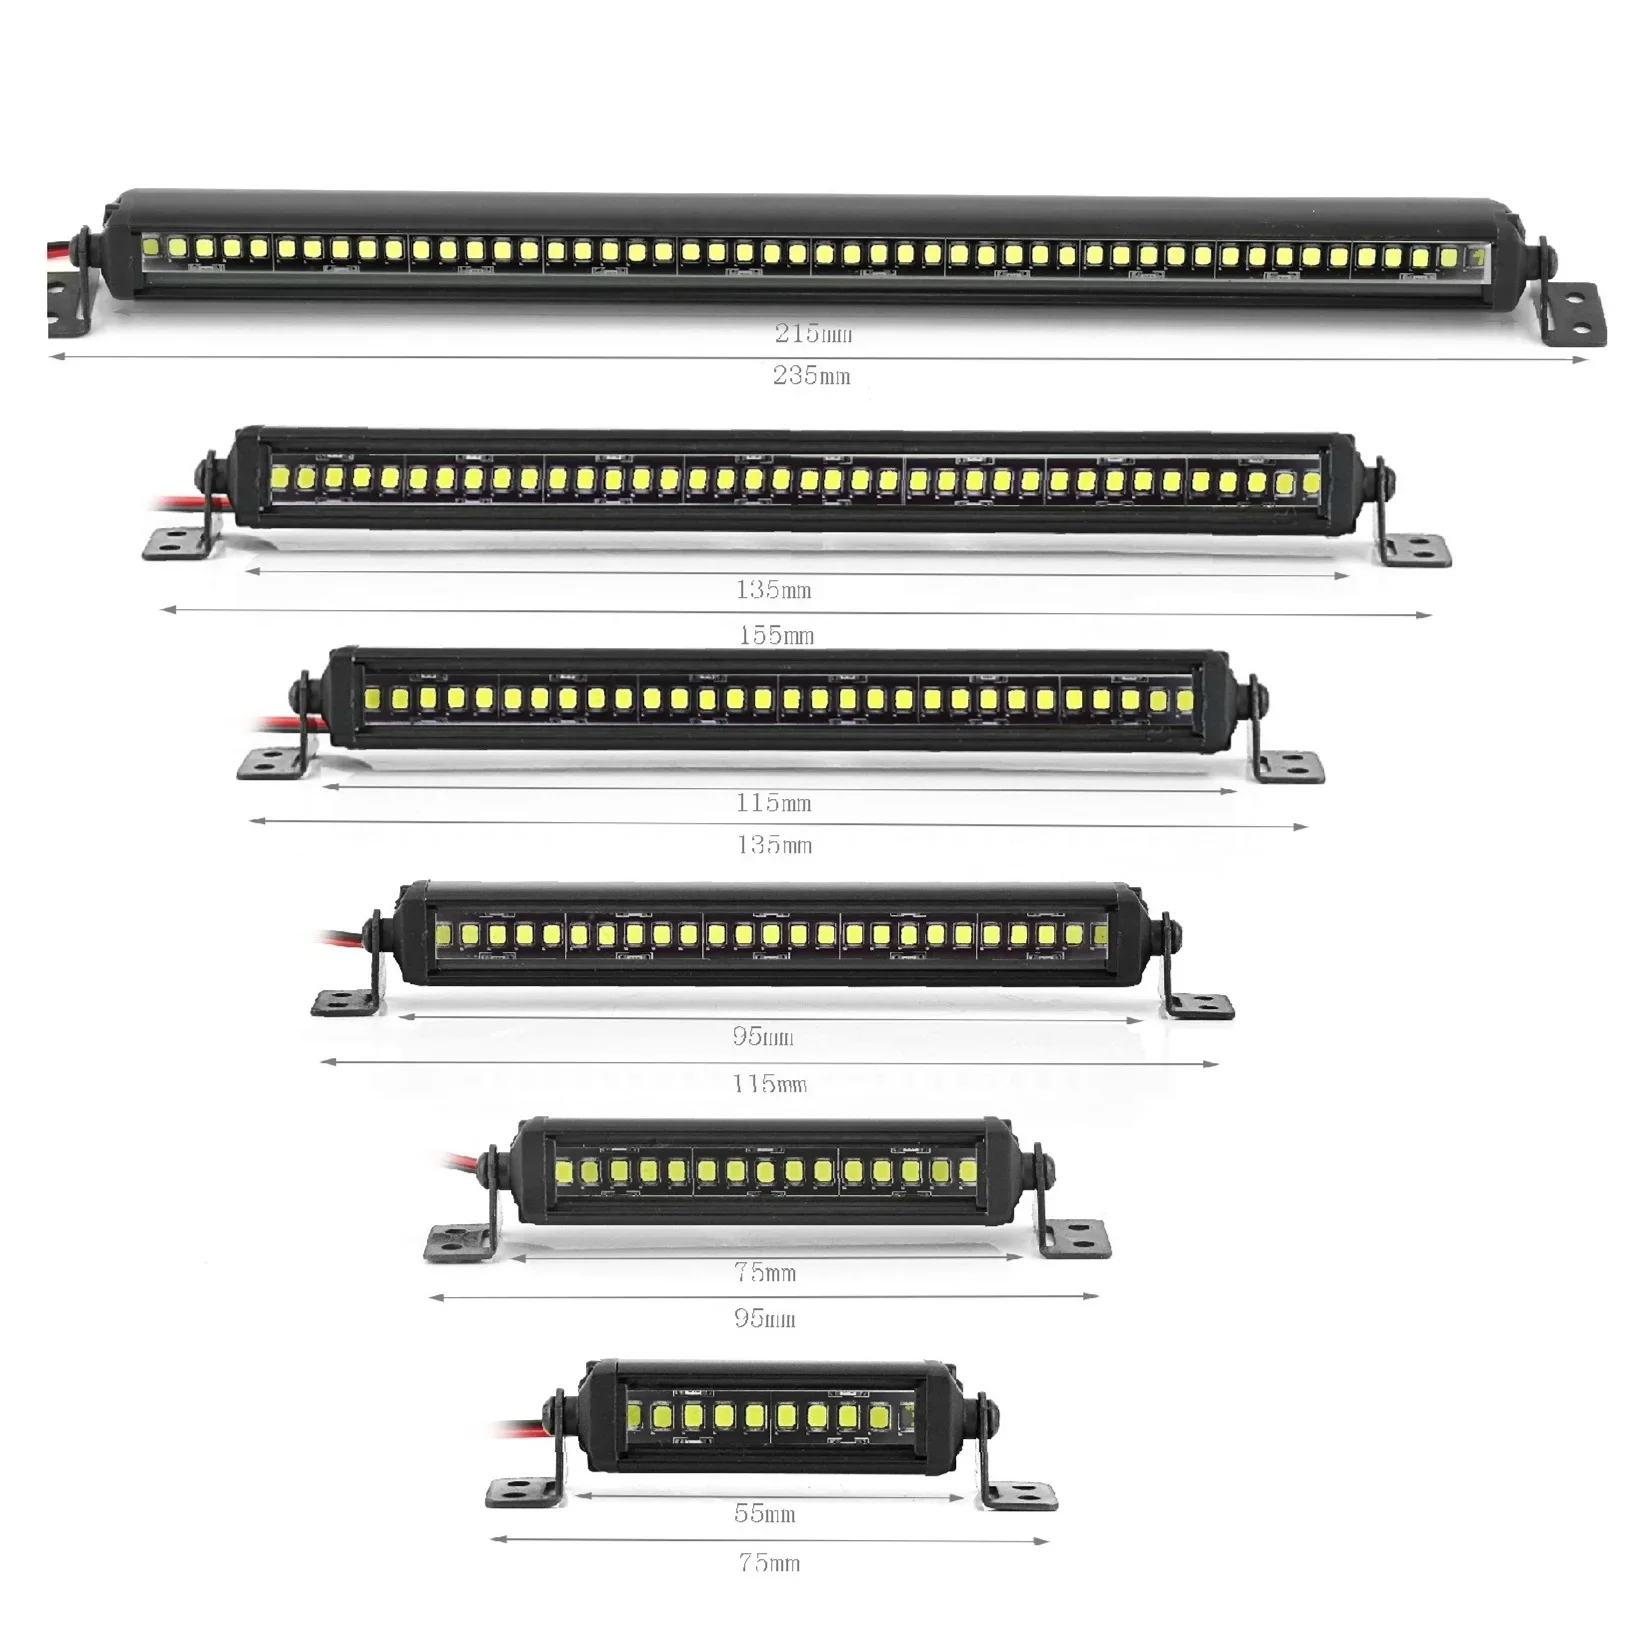 

KKRC 55/75/95/115/135/215mm LED Light Bar Roof Lamp Lights for Axial SCX10 90046 Traxxas TRX4 Slash Rustler 1/8 1/10 RC Car Upgr